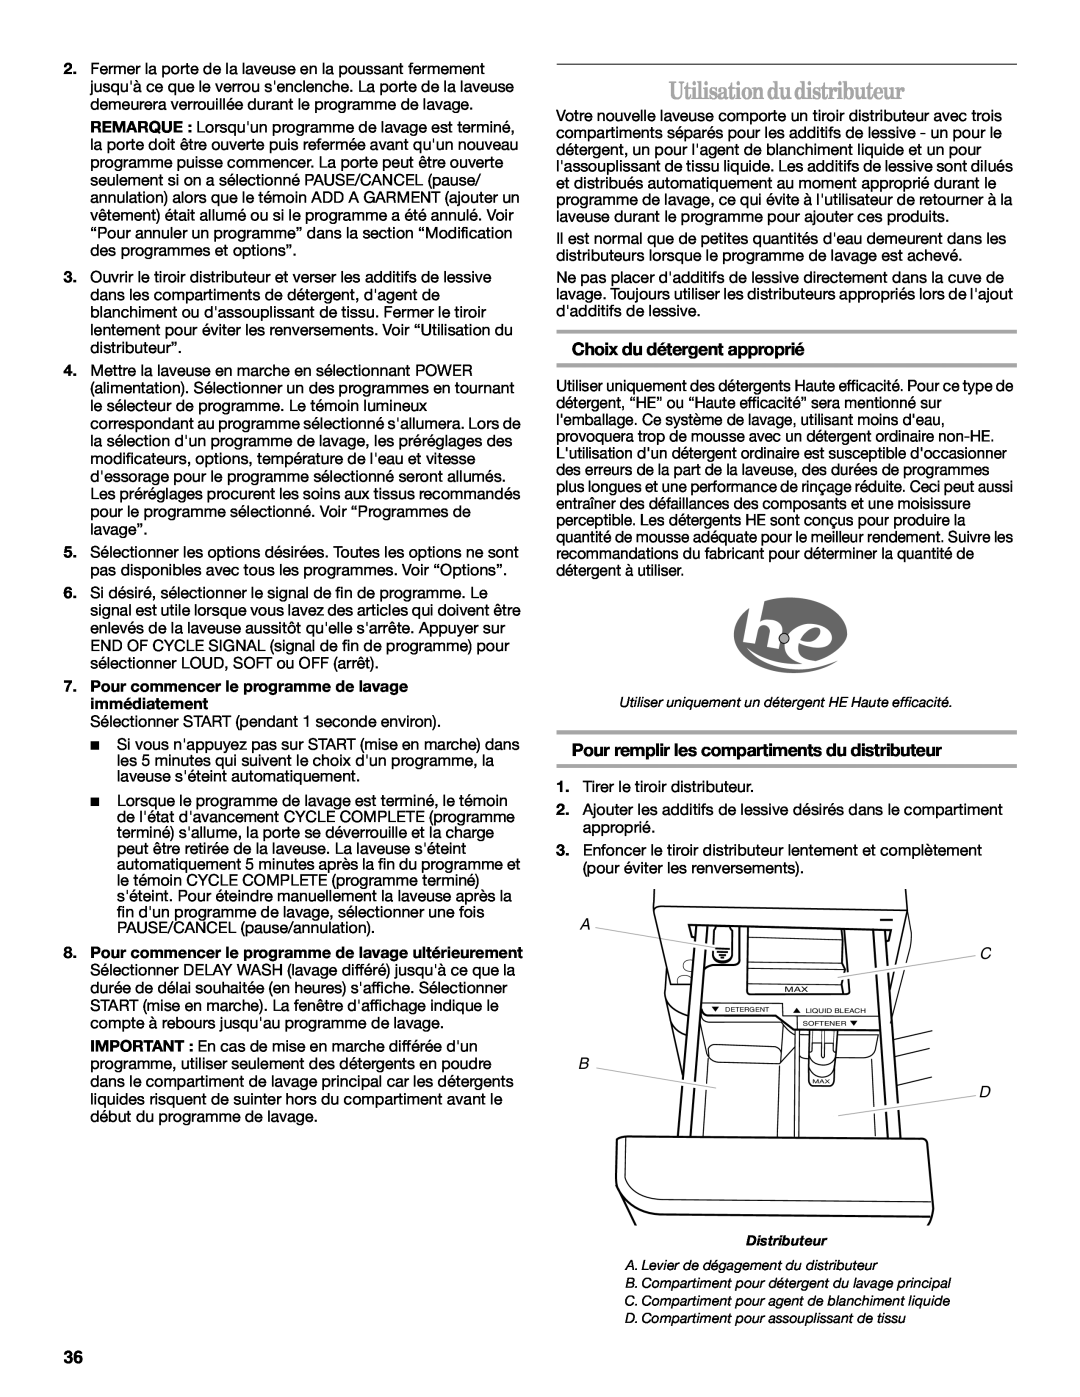 Whirlpool W10063560 manual Utilisationdudistributeur, Choix du détergent approprié 